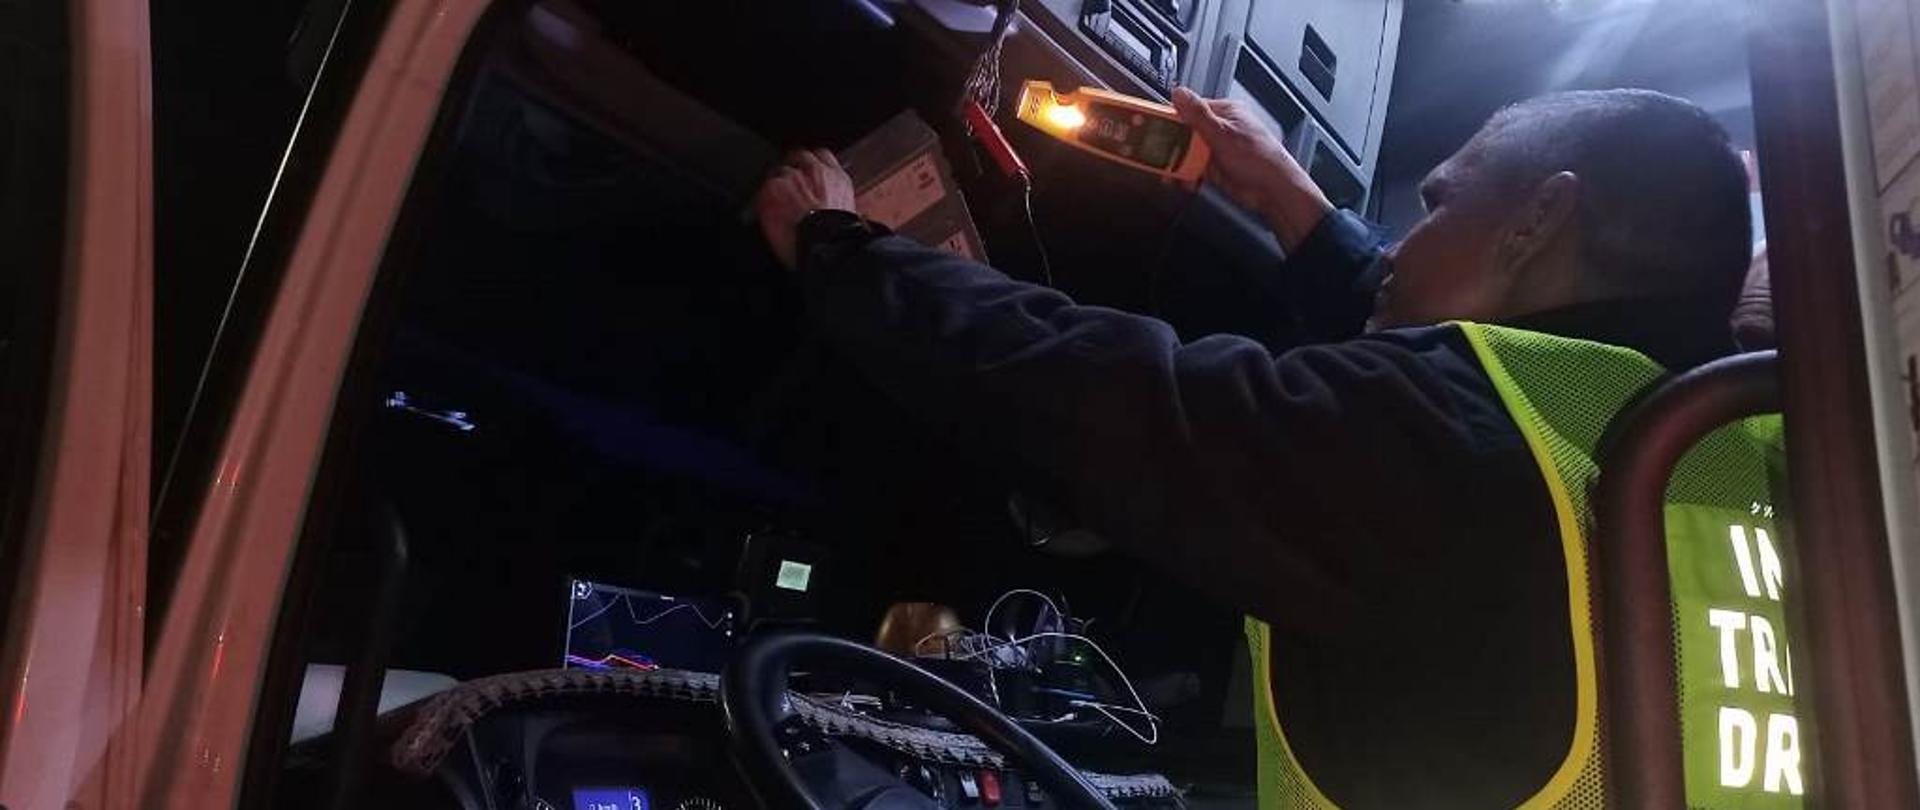 Umundurowany inspektor lubuskiej Inspekcji Transportu Drogowego siedzi na fotelu kierowcy w kontrolowanej ciężarówce. Funkcjonariusz podłącza specjalistyczny przyrząd kontrolno-pomiarowy do instalacji tachografu zamontowanego w pojeździe.